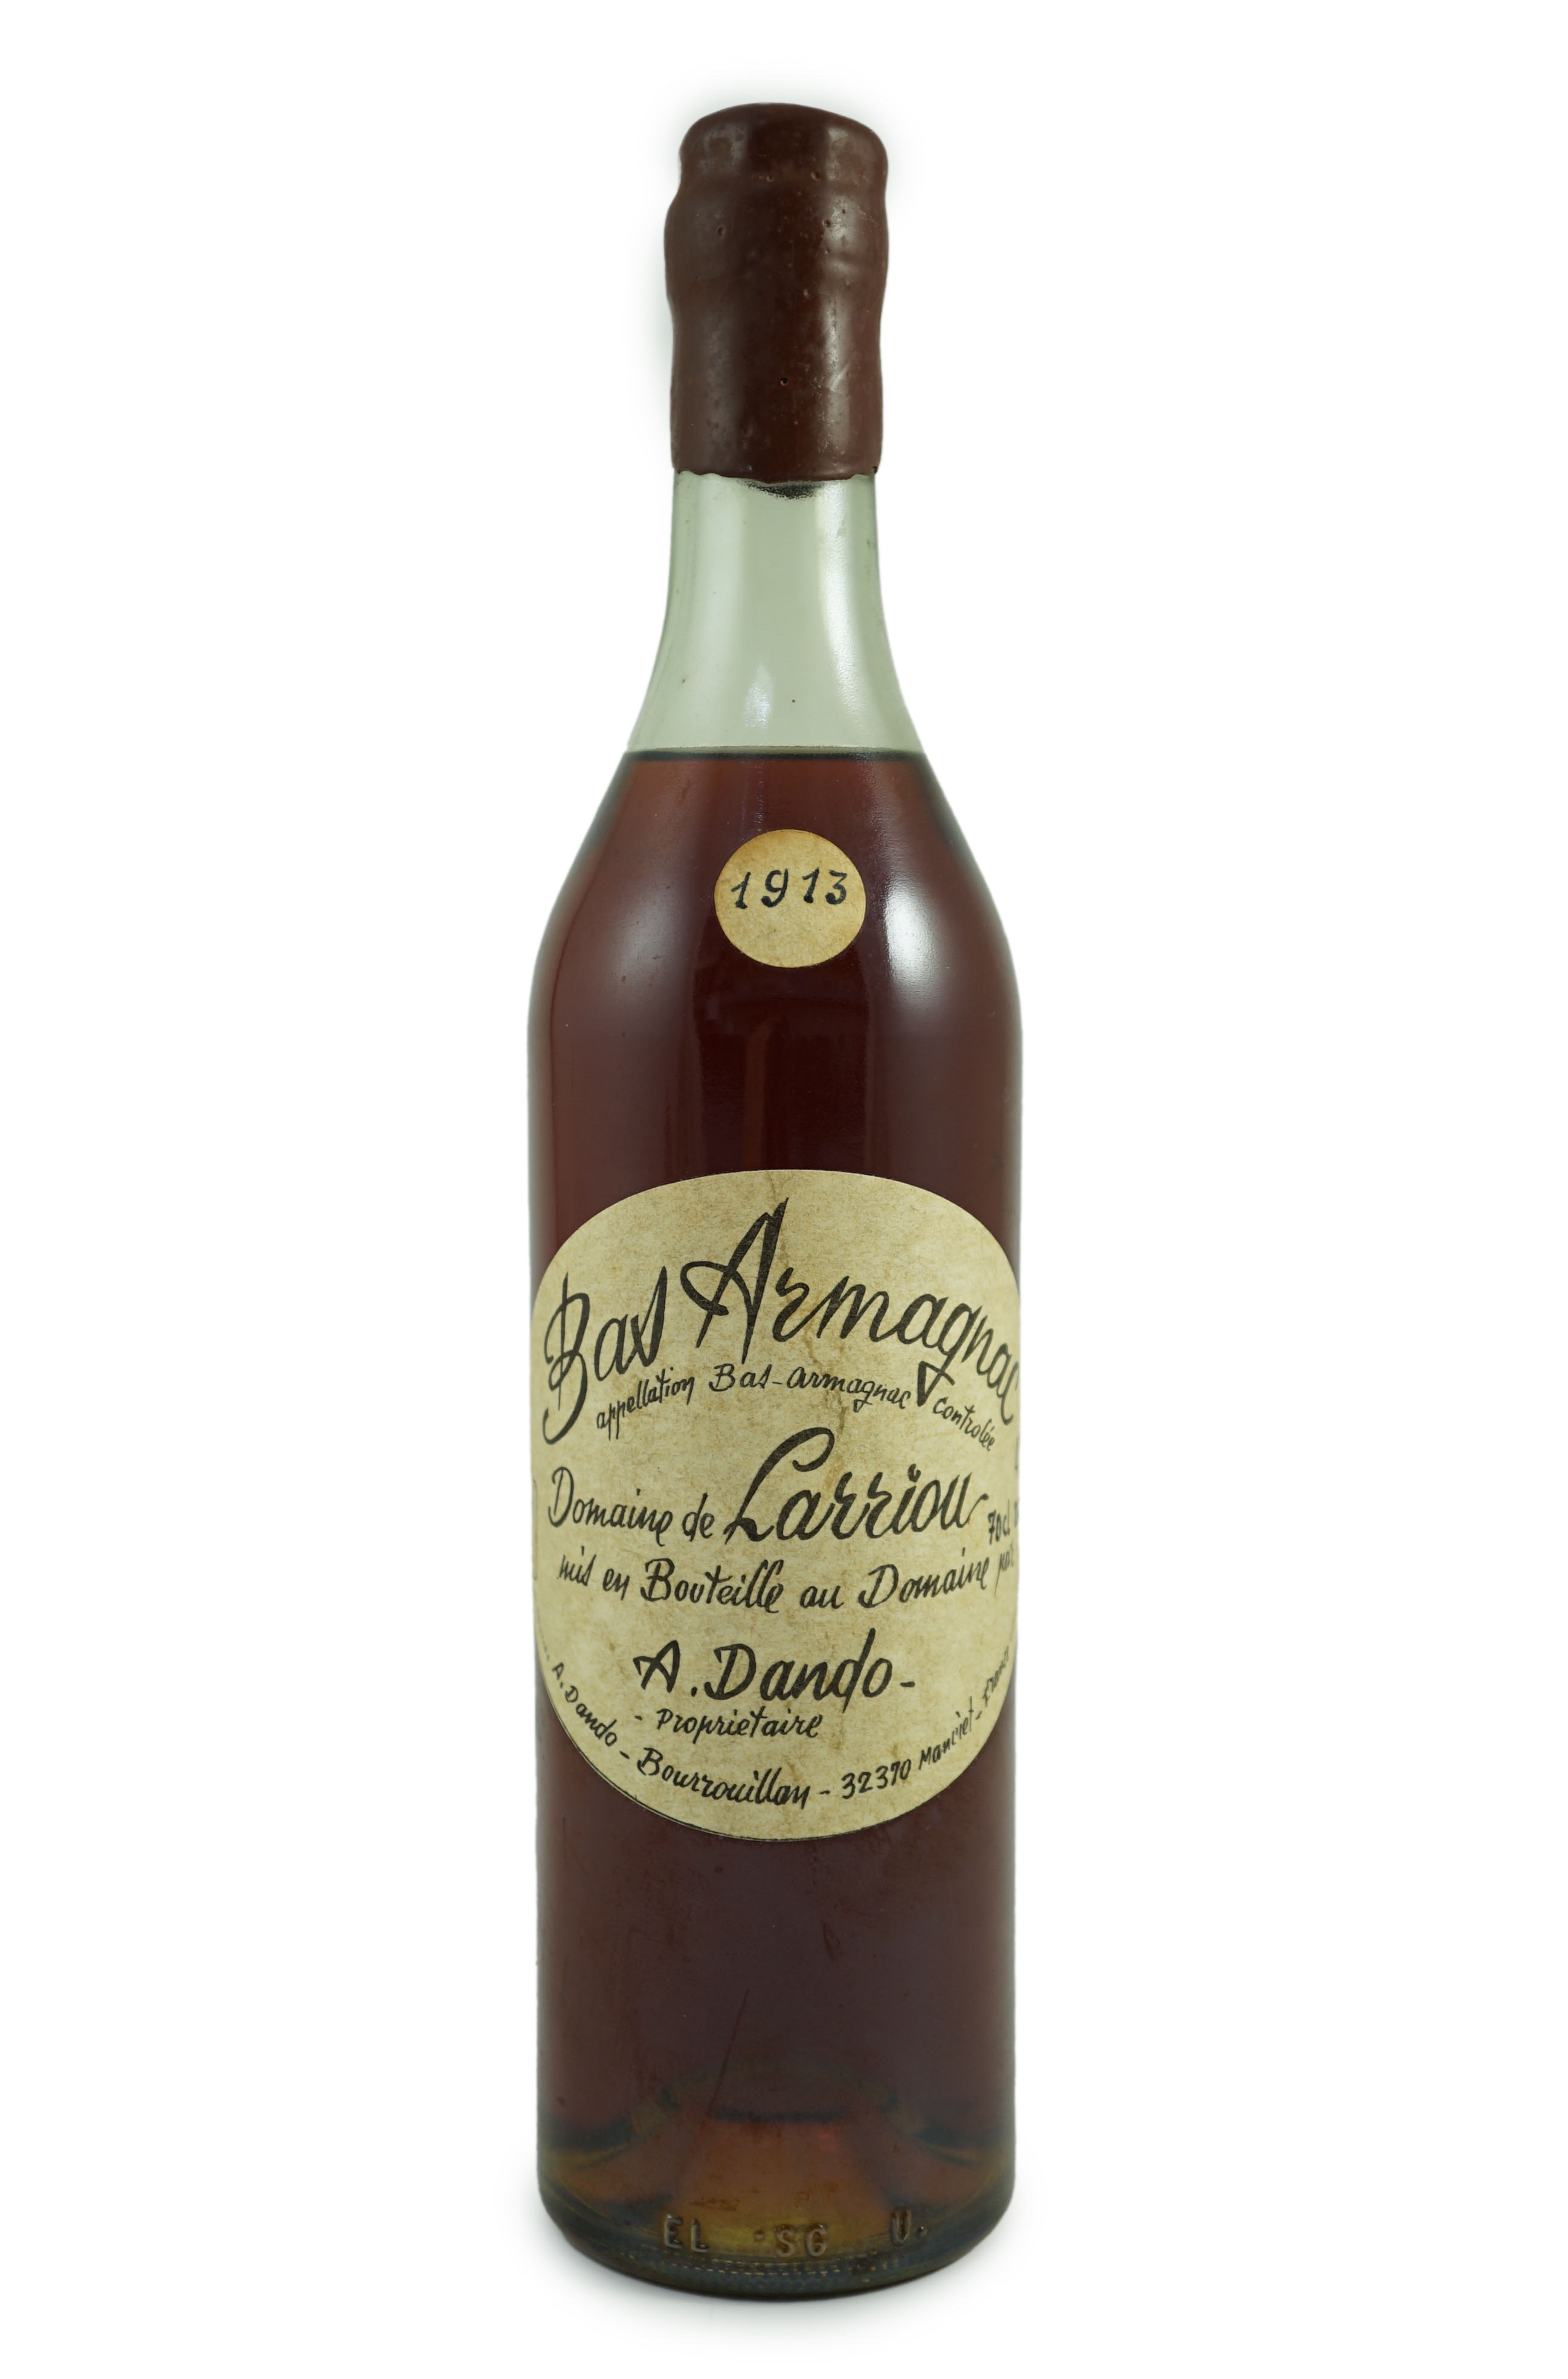 A bottle of Domaine de Larriou Bas Armagnac 1913, 31cm high